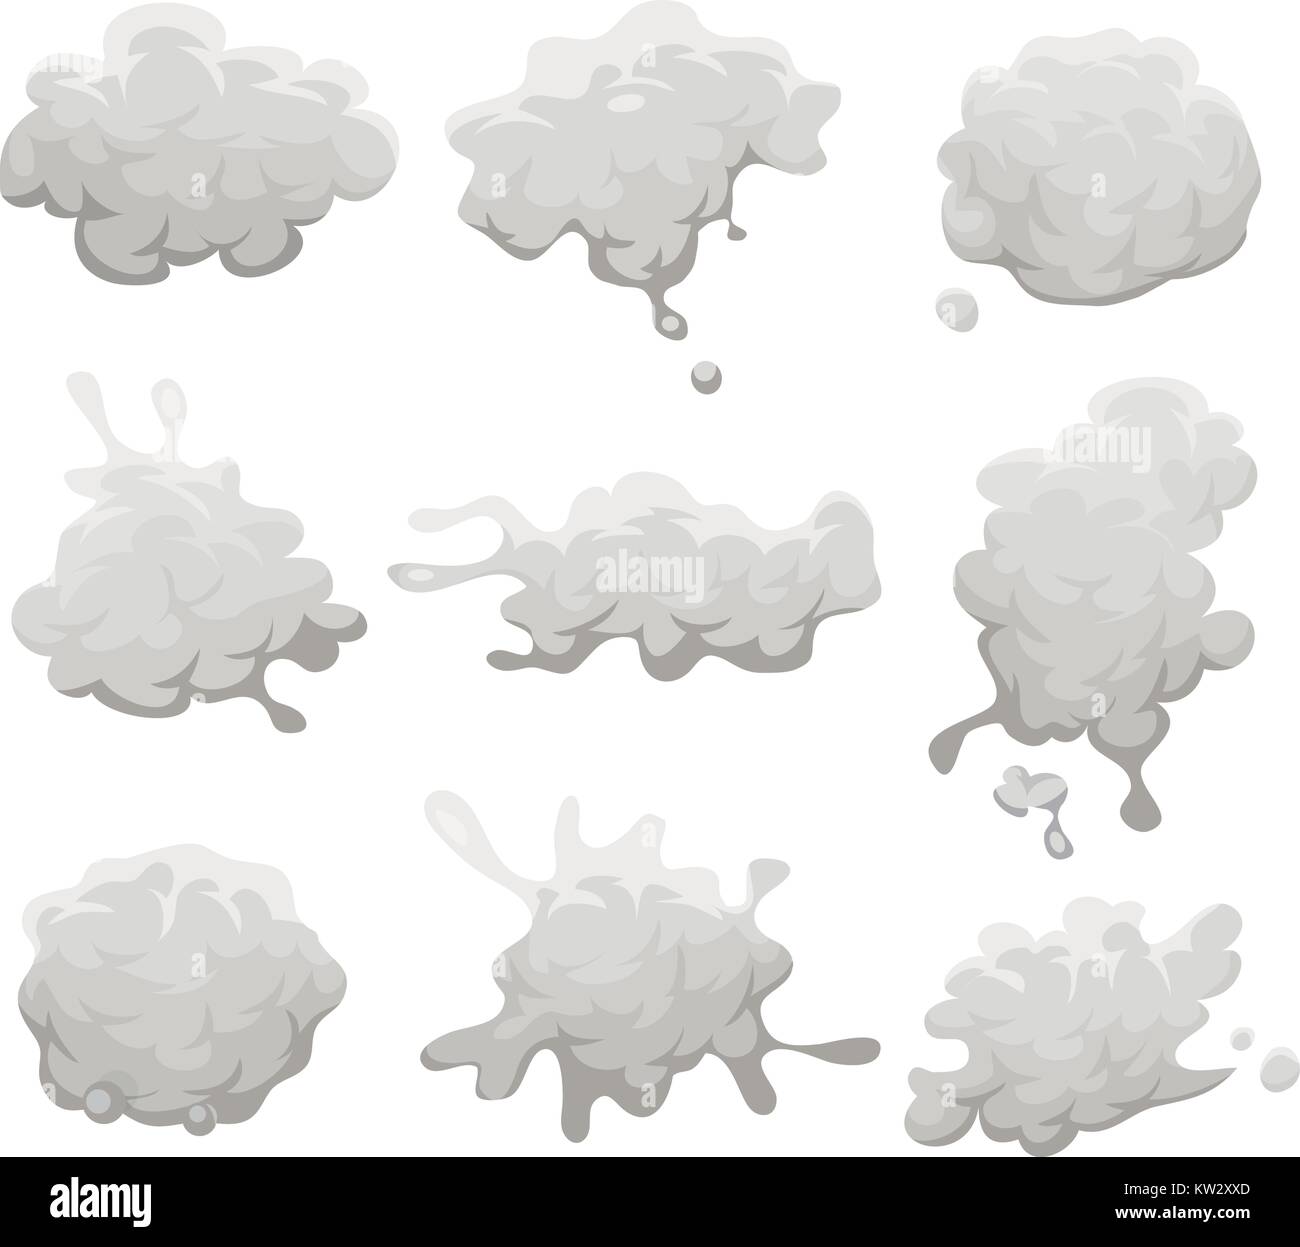 Illustration d'un ensemble de dessins des nuages gris, fumée, explosion, explosion, éclaboussure et icônes de brouillard Illustration de Vecteur